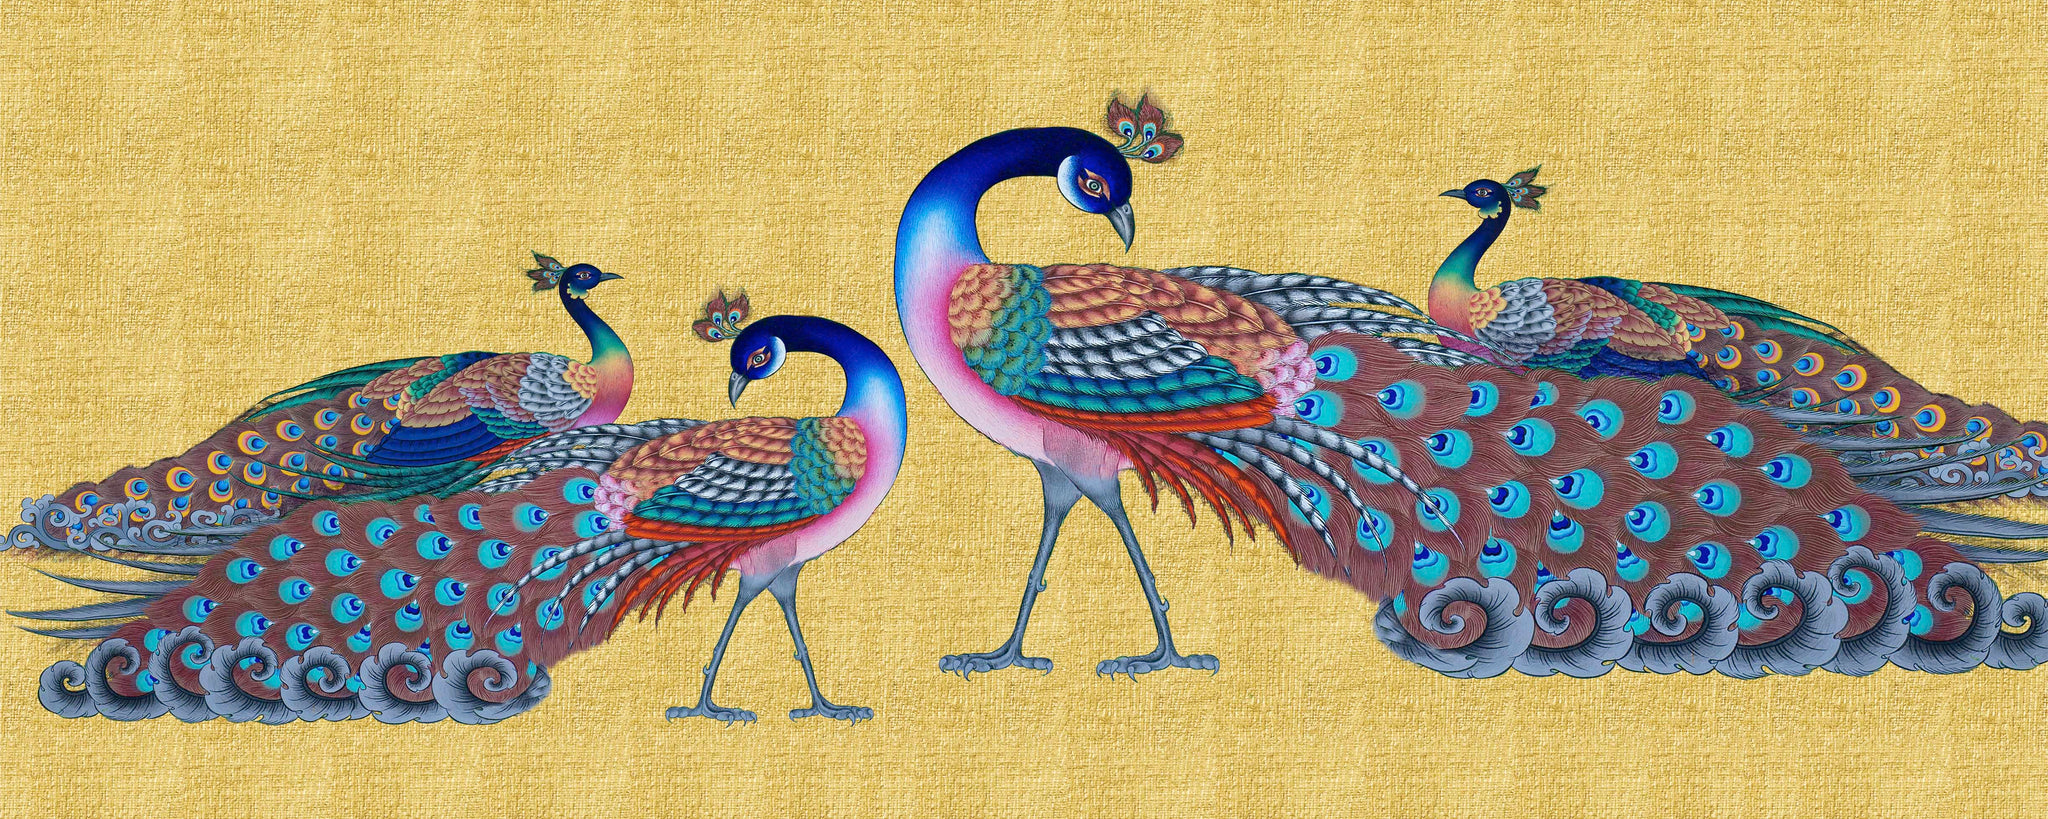 Celestial Peacock Family A